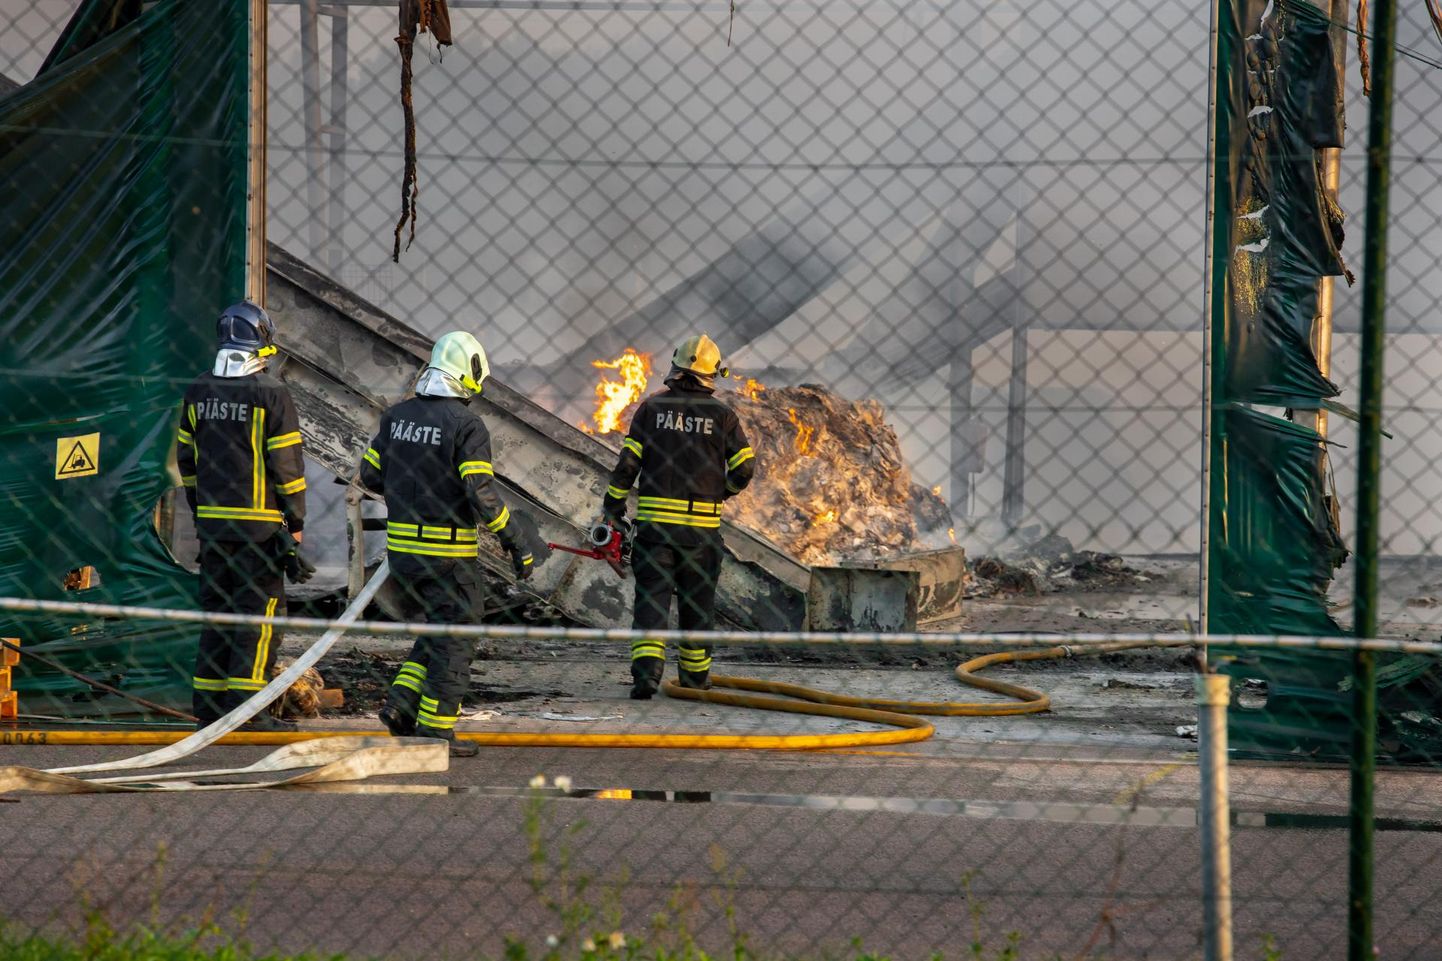 Seljametsas jäätmejaama angaari ja jäätmete süütamisest alguse saanud põlenguga tekkis üle 200 000 euro kahju.